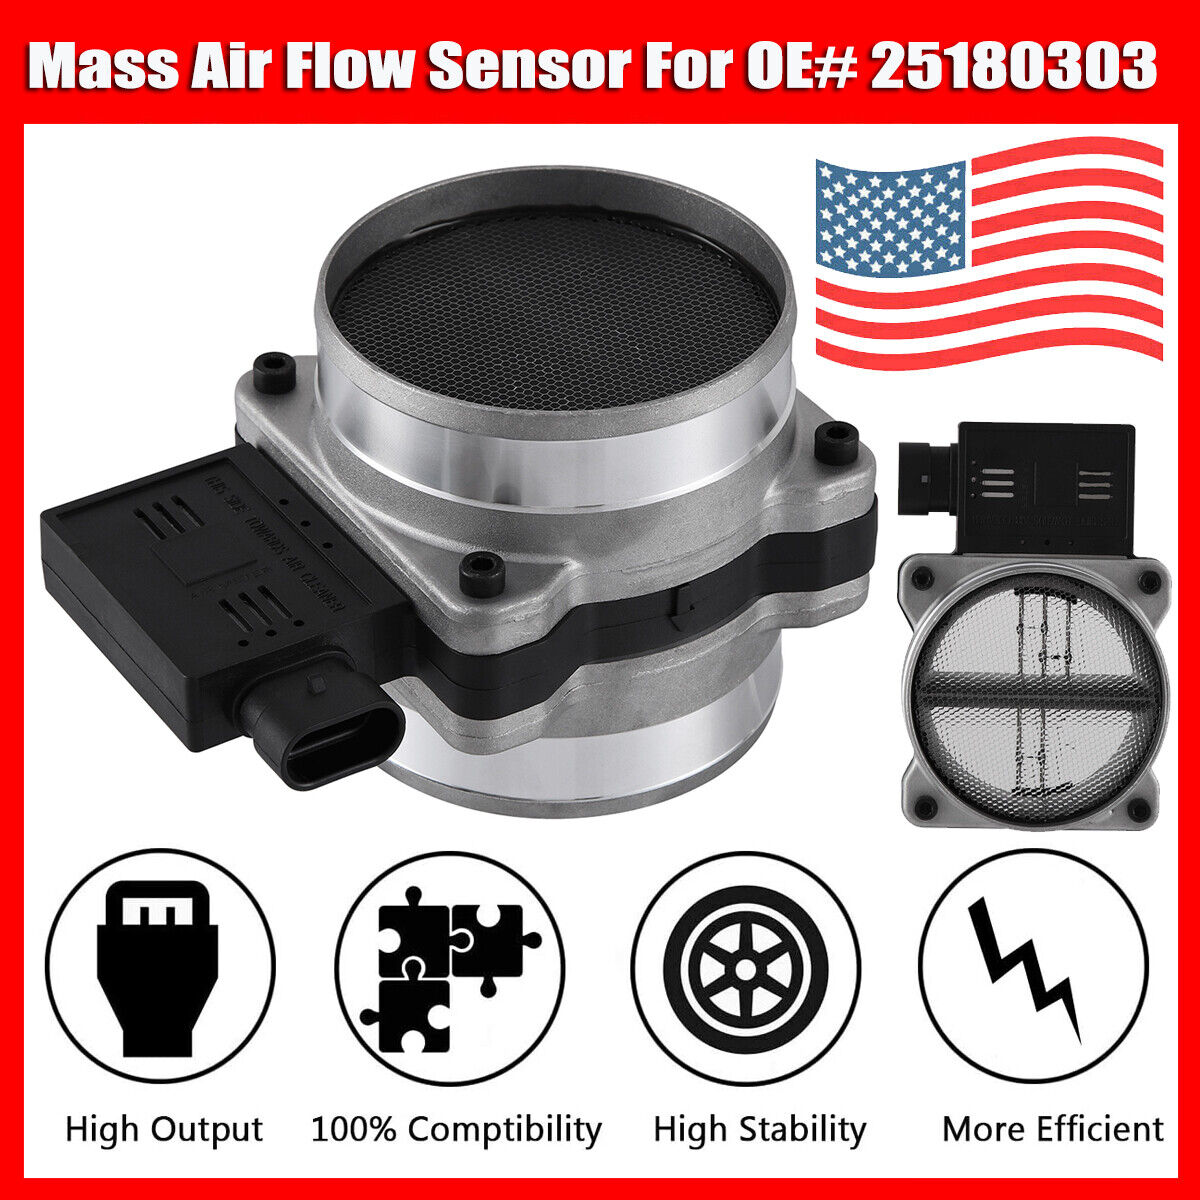 Mass Air Flow Sensor MAF for Buick Century Chevrolet Astro Blazer GMC # 25180303